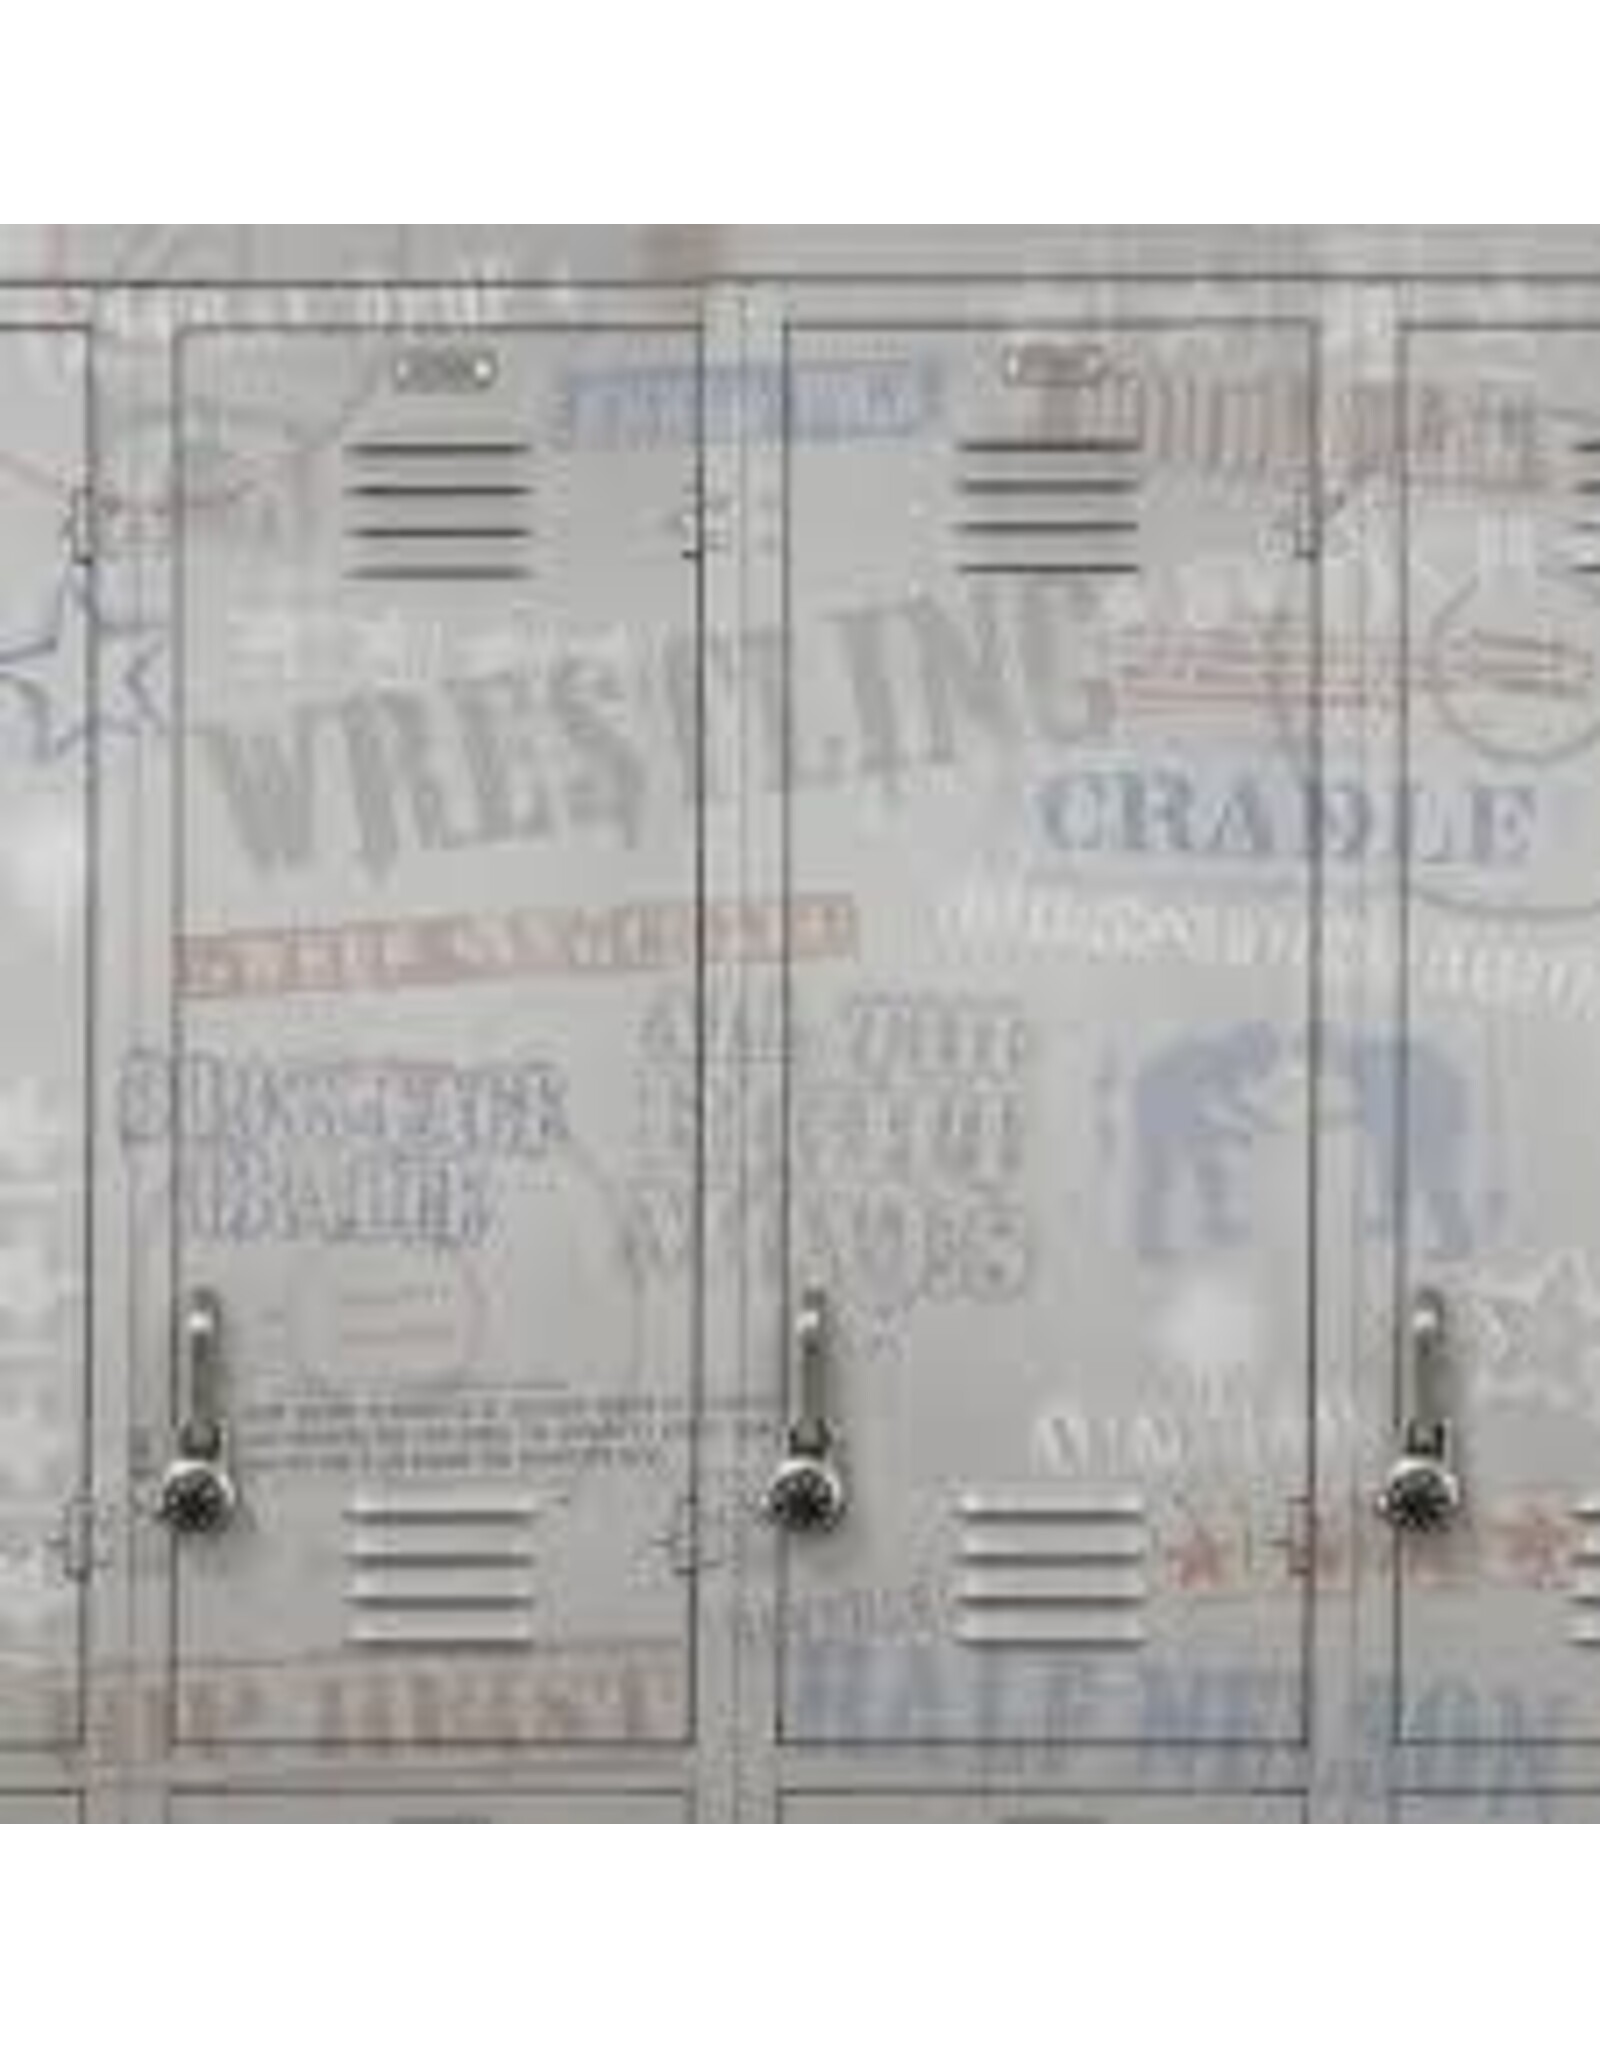 Wrestling locker paper